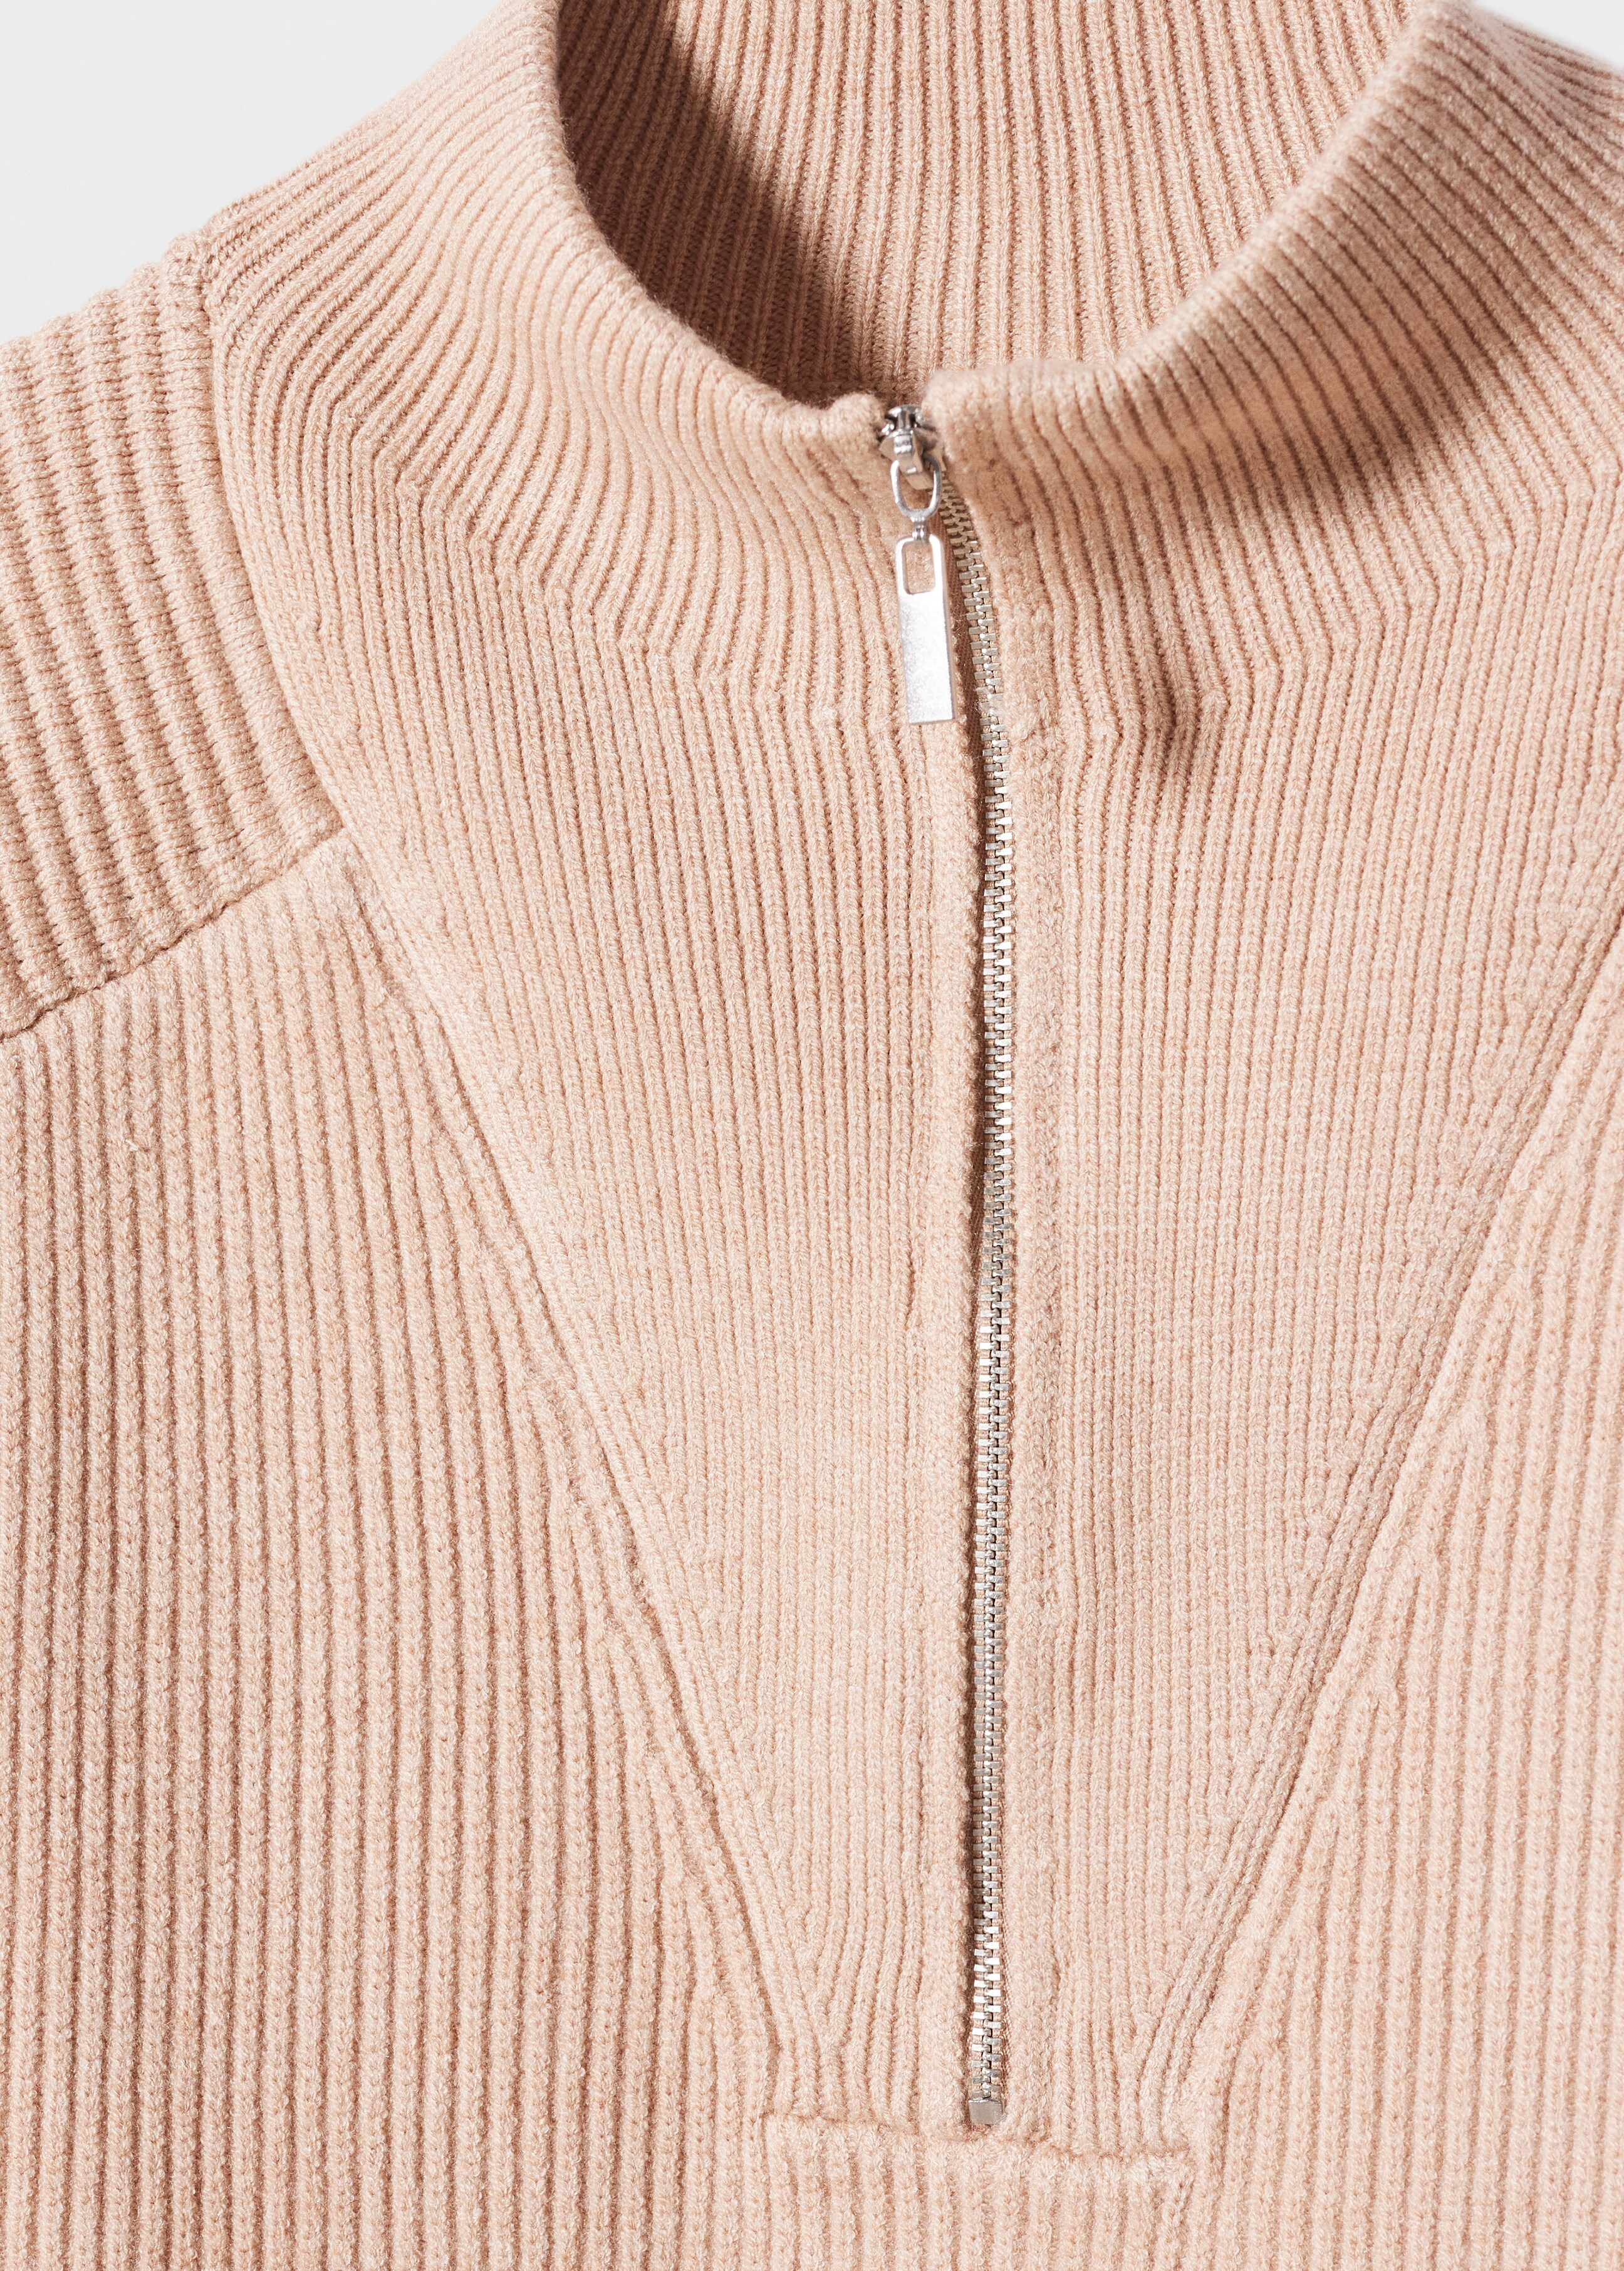 Zip-Pullover mit Rollkragen - Detail des Artikels 8